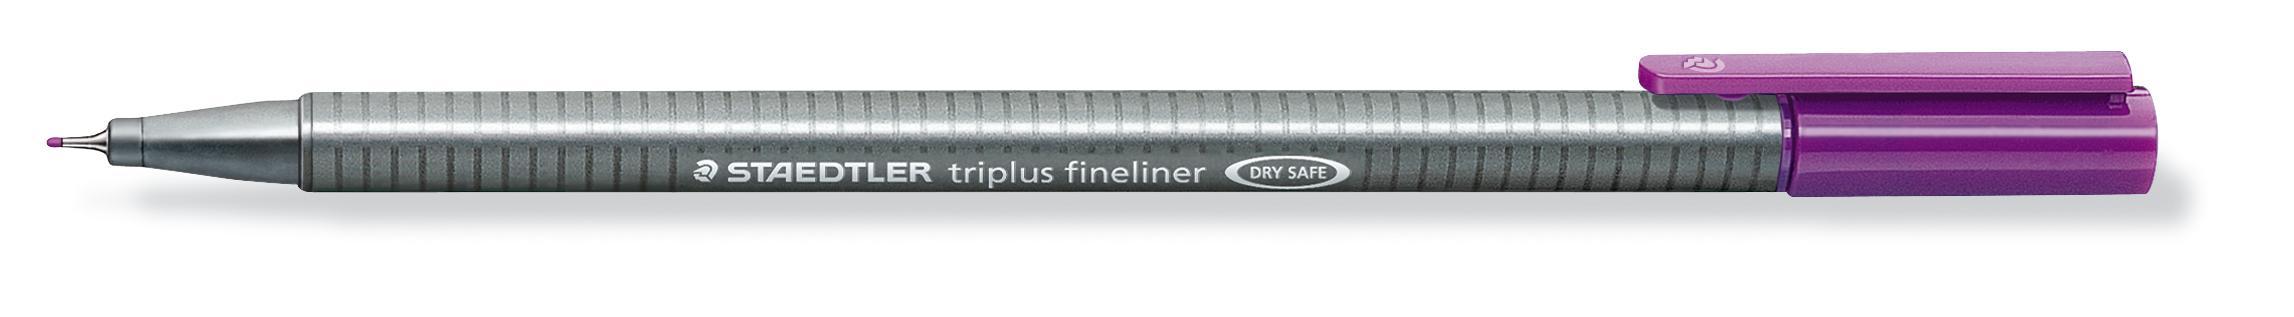 STAEDTLER Triplus Fineliner 0,3mm 334-6 violet